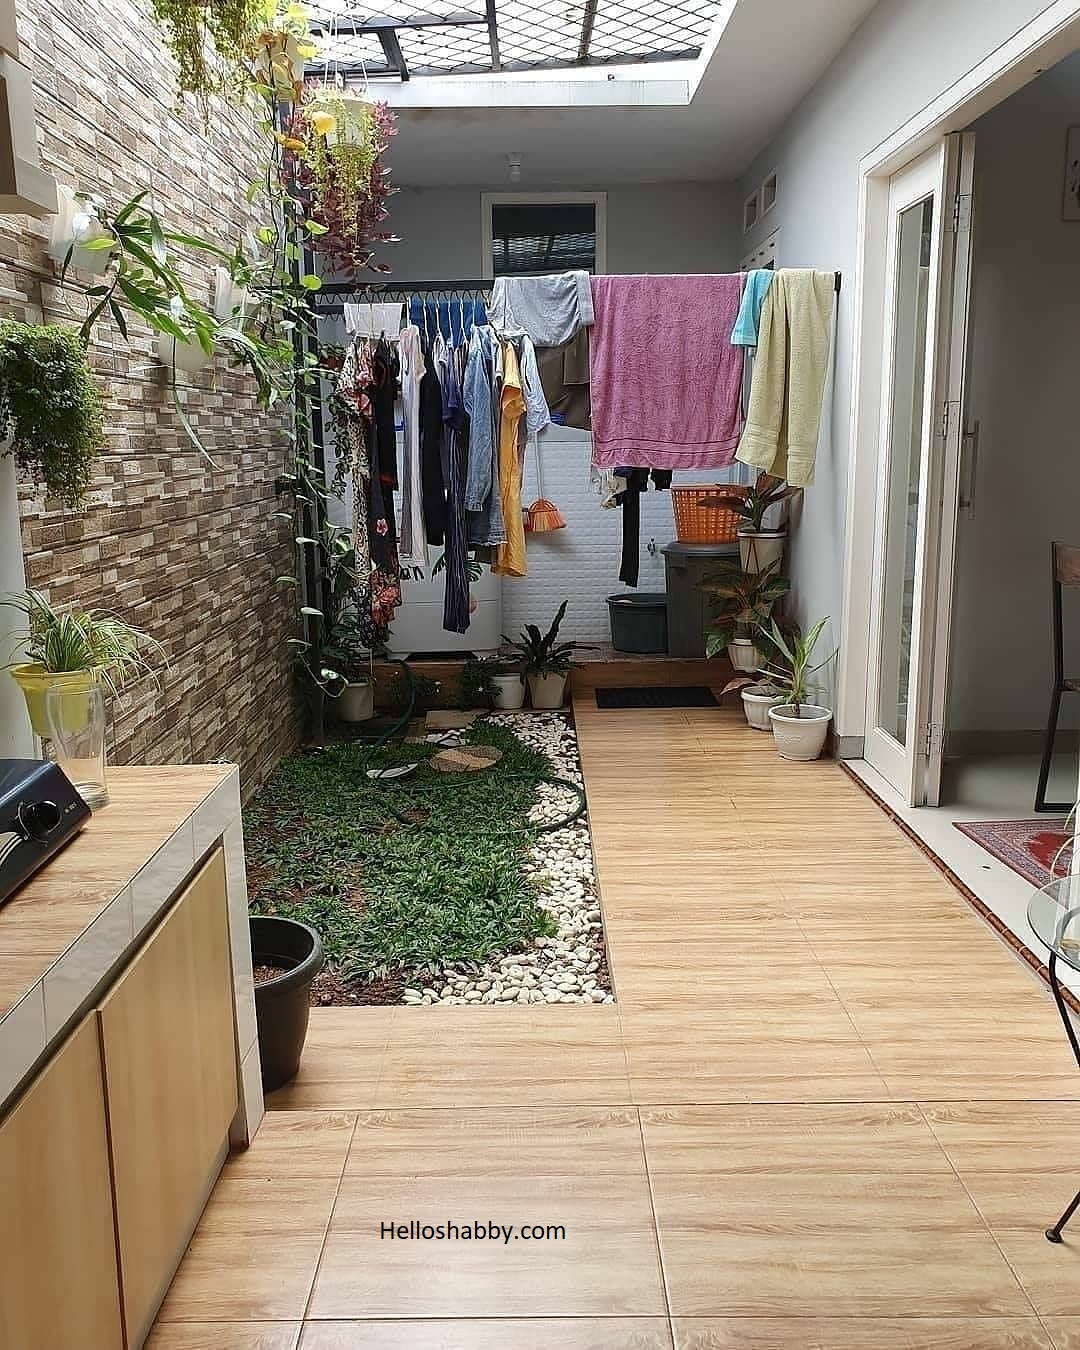 Ide Terbaru 6 Desain Laundry Room Dan Tempat Jemuran Dalam Rumah HelloShabbycom Interior And Exterior Solutions